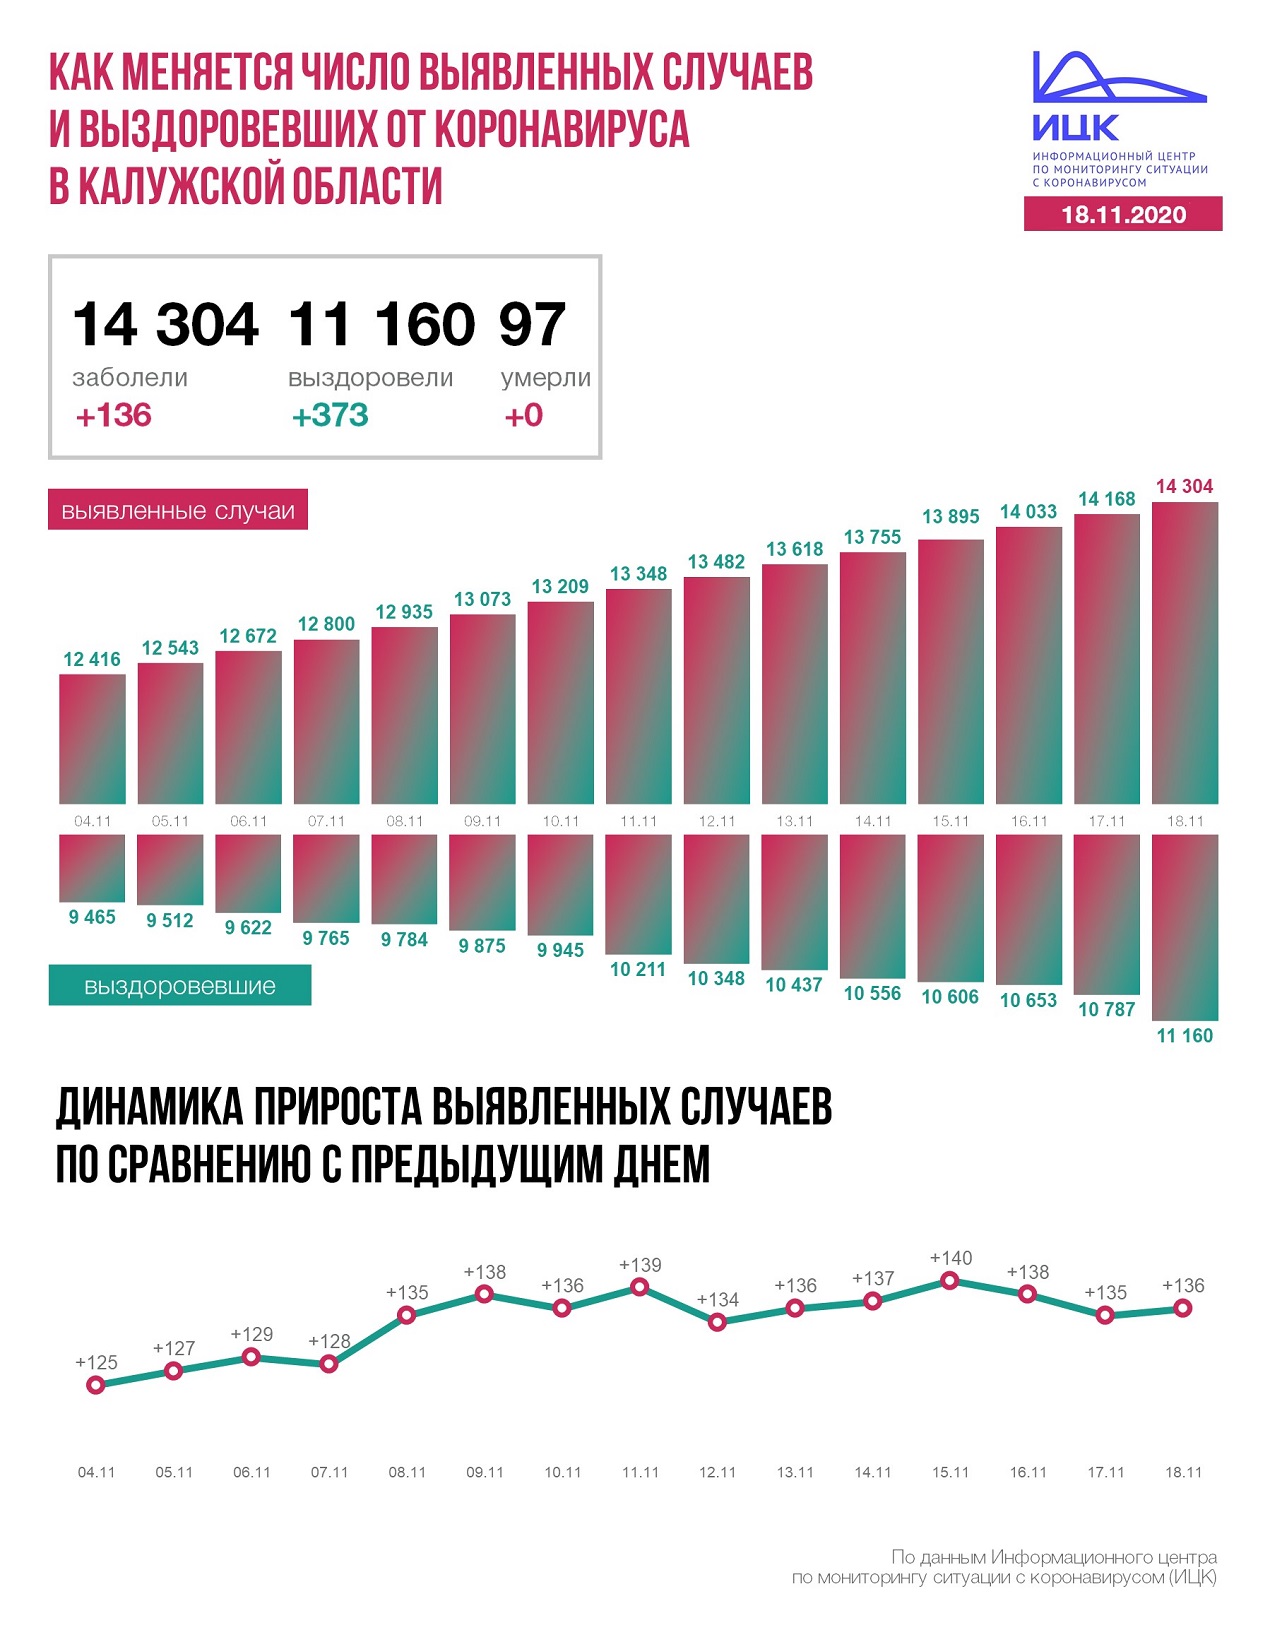 Официальные данные по коронавирусу в Калужской области на 18 ноября 2020 года.